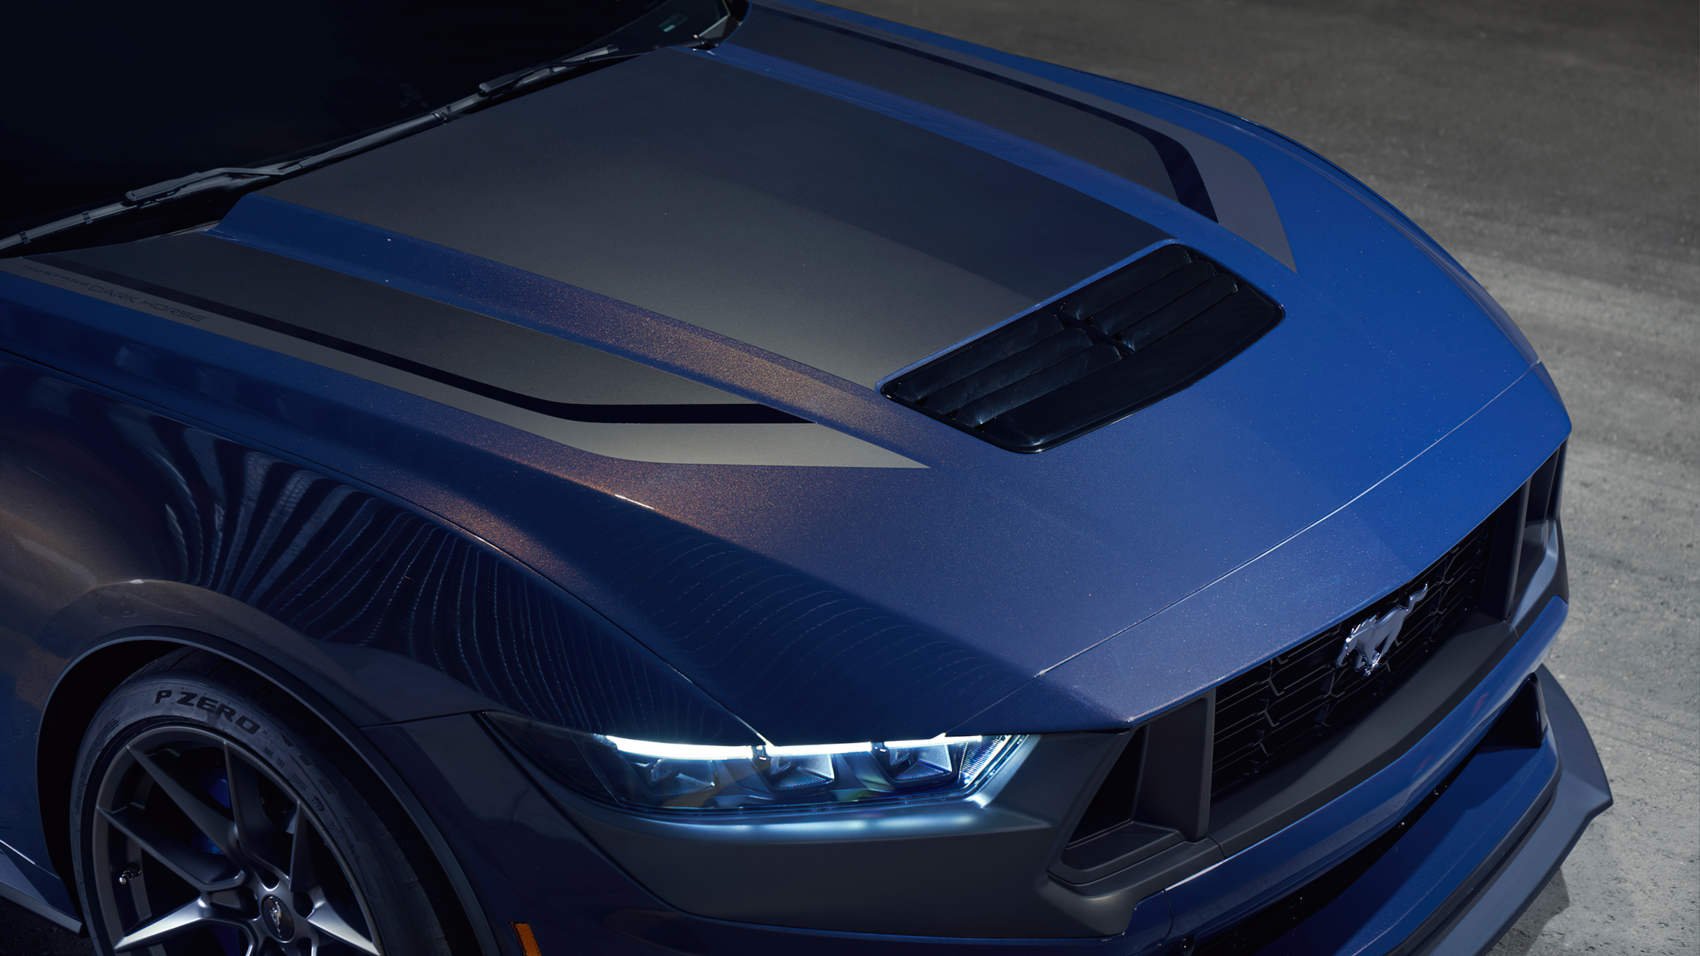 Nowy Ford Mustang Dark Horse - charakterystyczne przednie reflektory